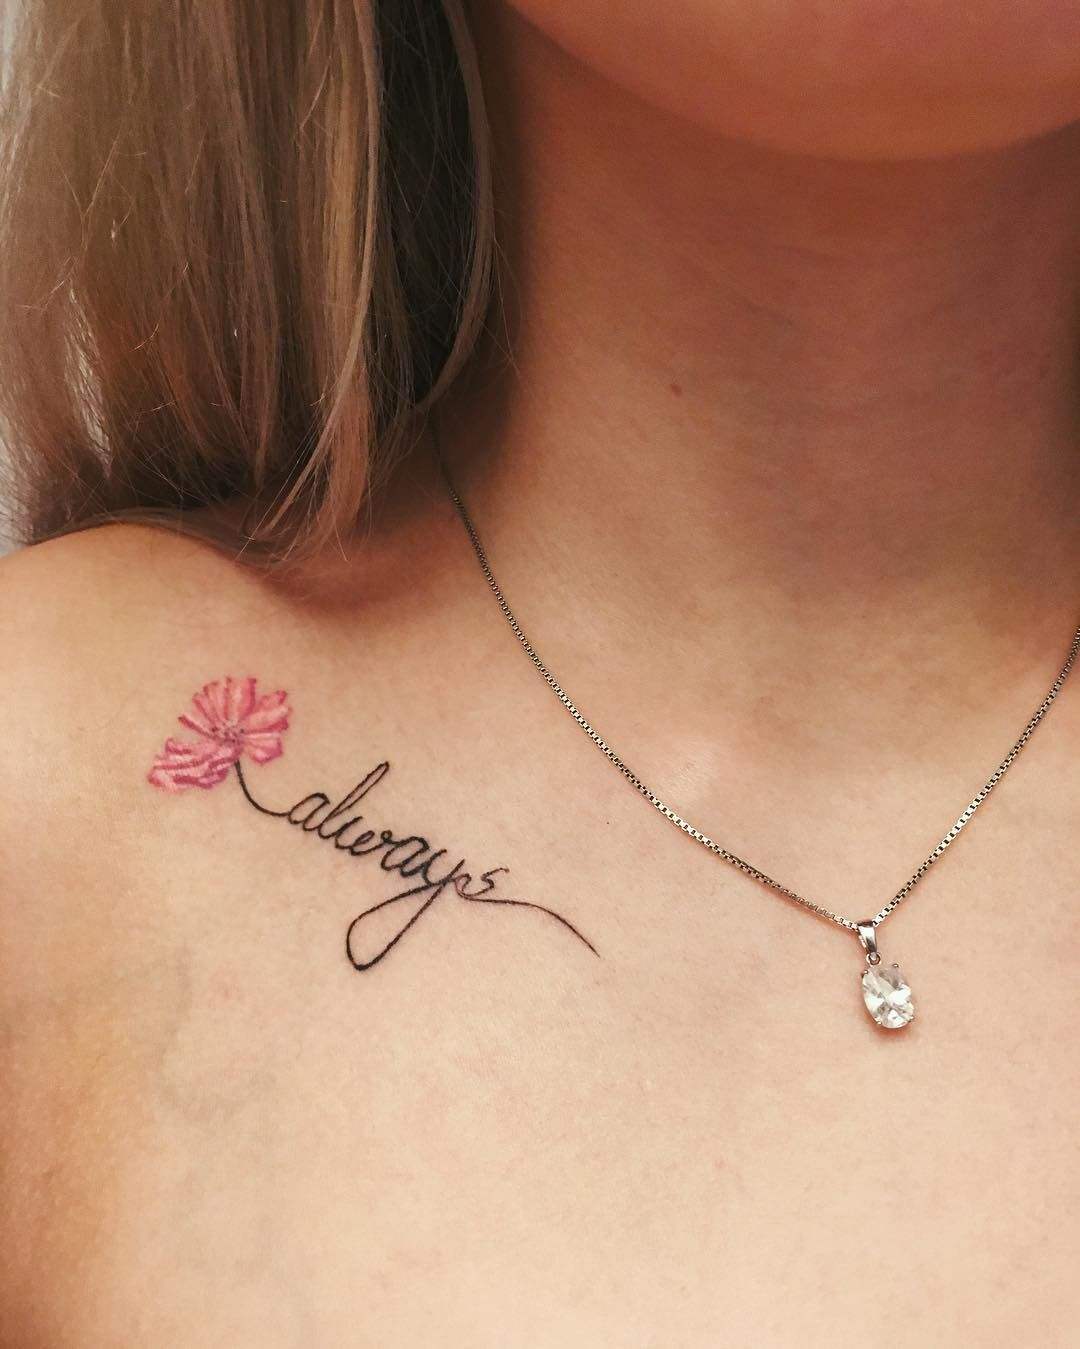 Frauen tattoo schlüsselbein motive Herz Vorlagen